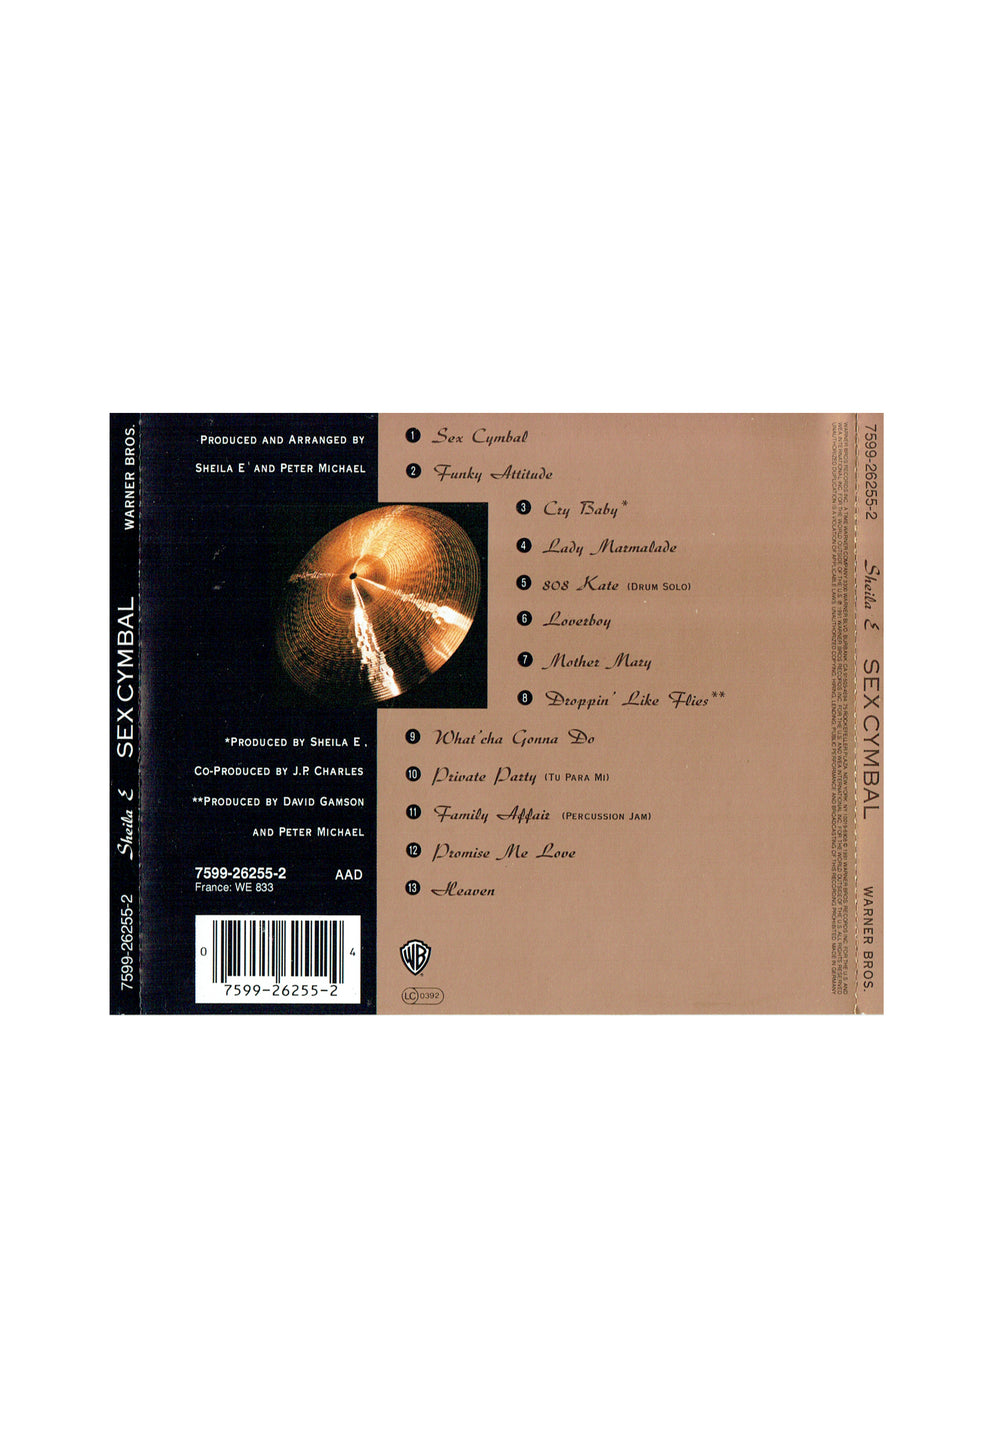 Sheila E Sex Cymbal CD Album 13 Tracks EU Jewel Case Prince SW